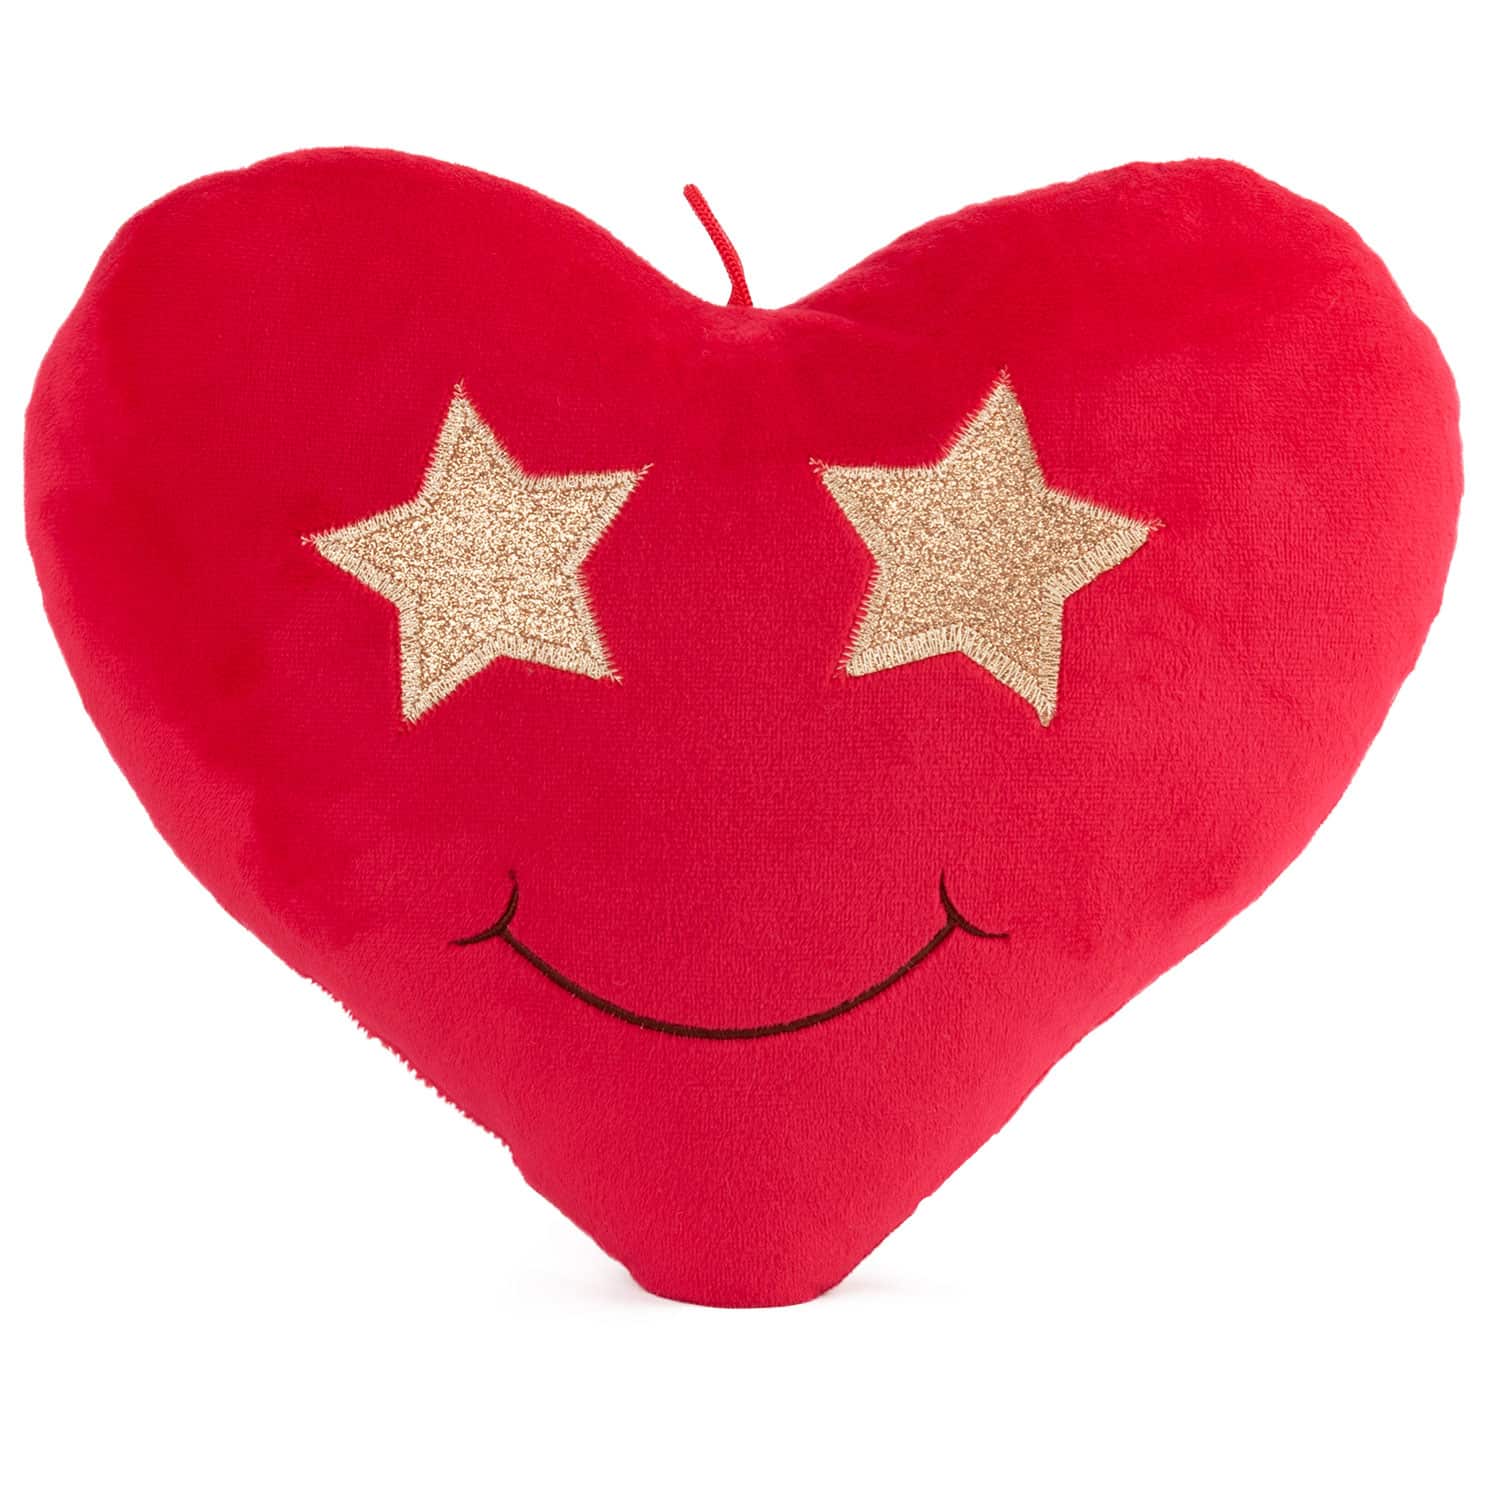 Heart emoticon - Stars